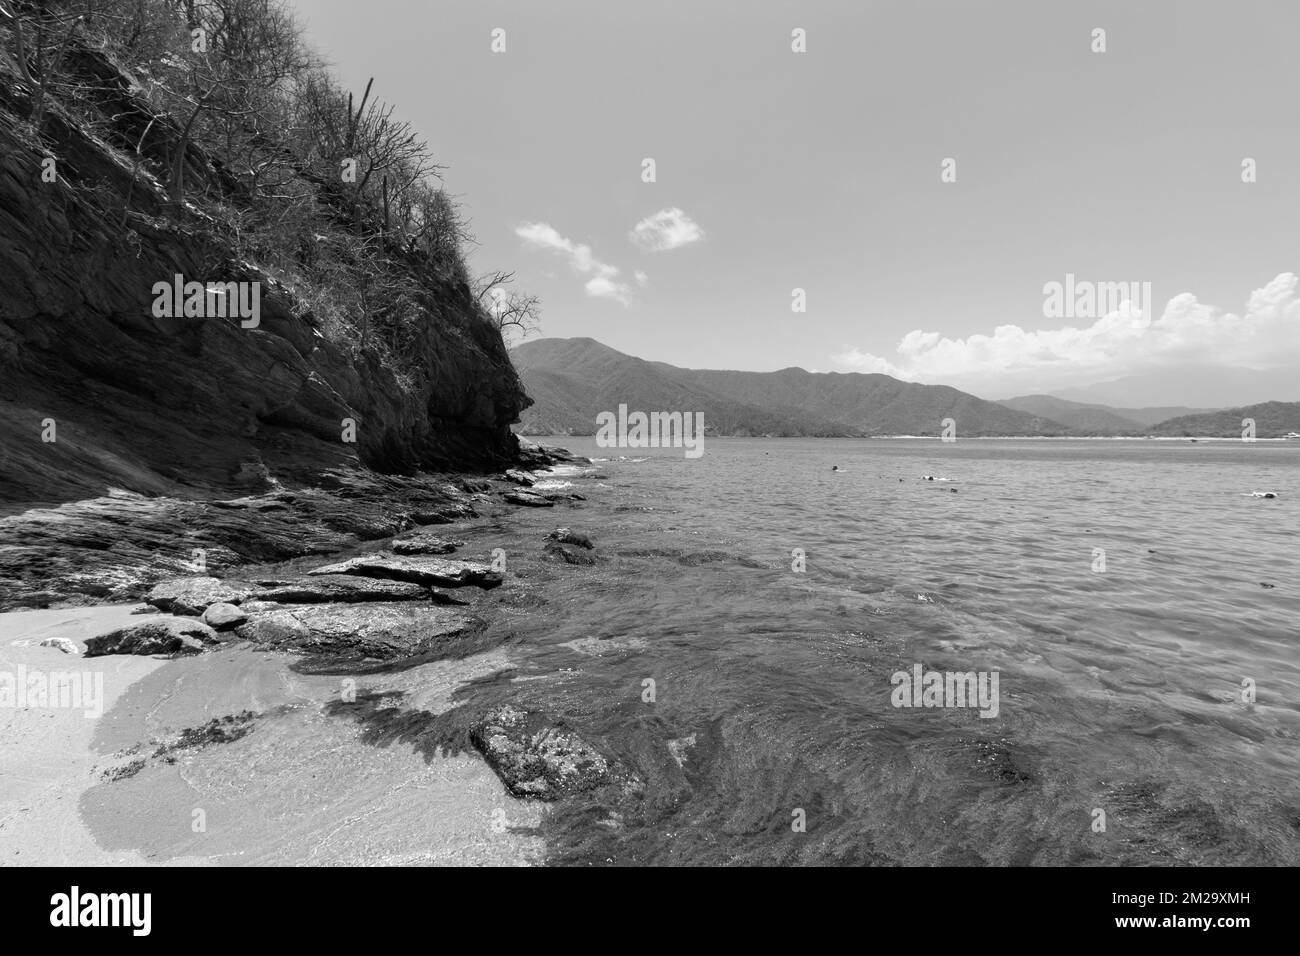 Wunderschöne Schwarz-Weiß-Fotografie der kolumbianischen Tayrona-Landschaft mit felsigem Berg und concha-Bucht im Hintergrund Stockfoto